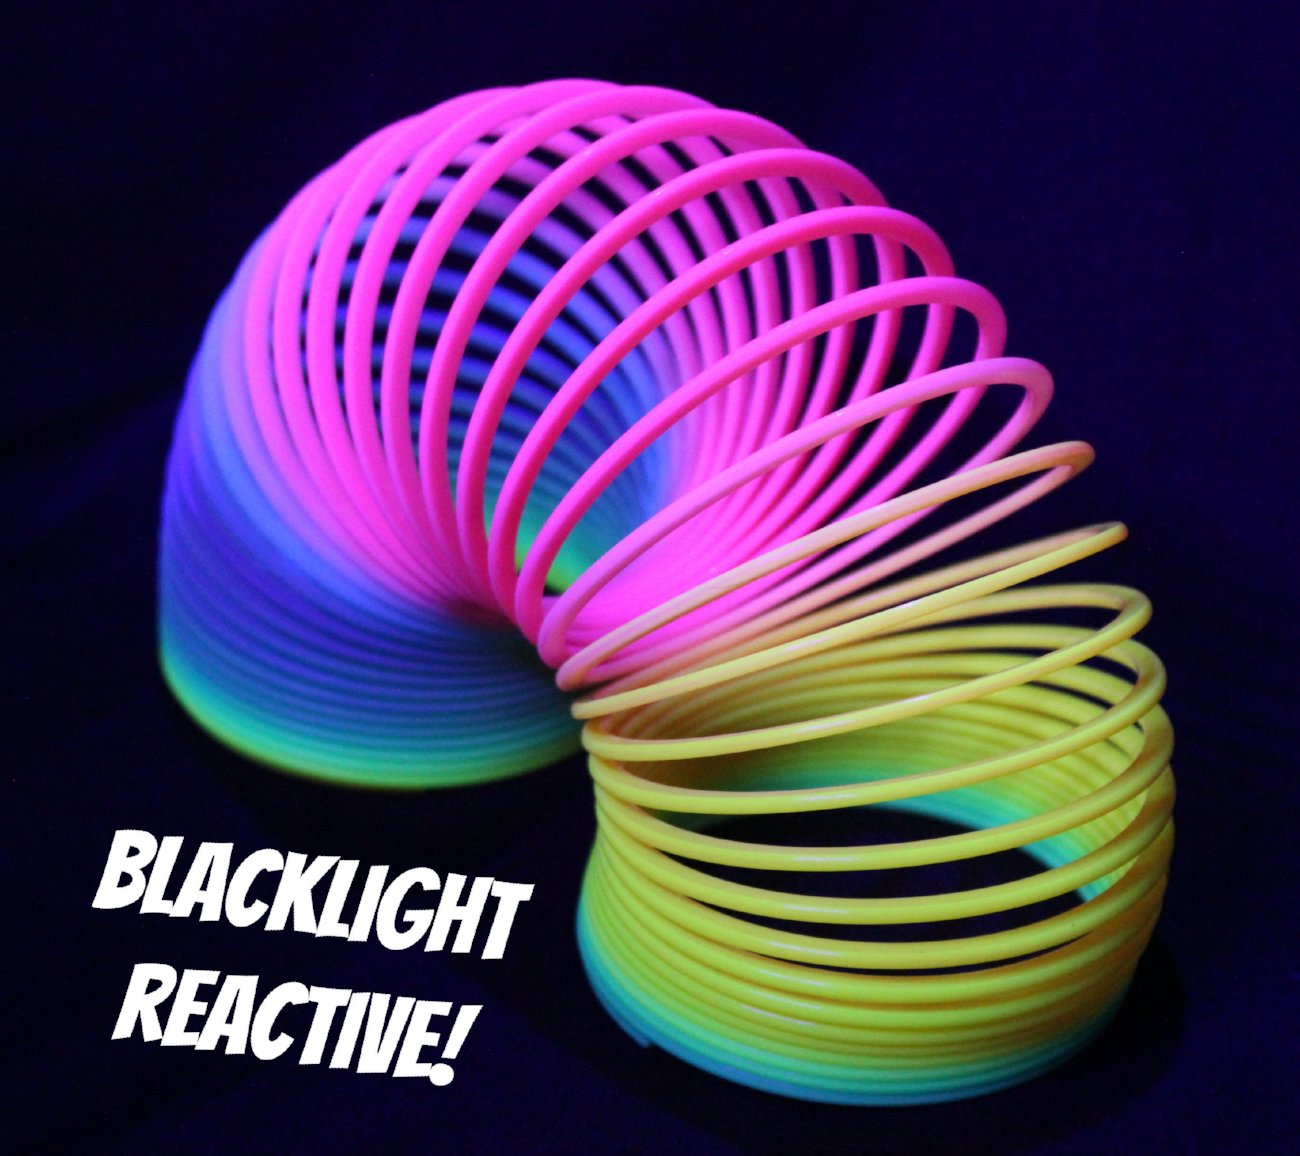 It's blacklight / UV reactive!